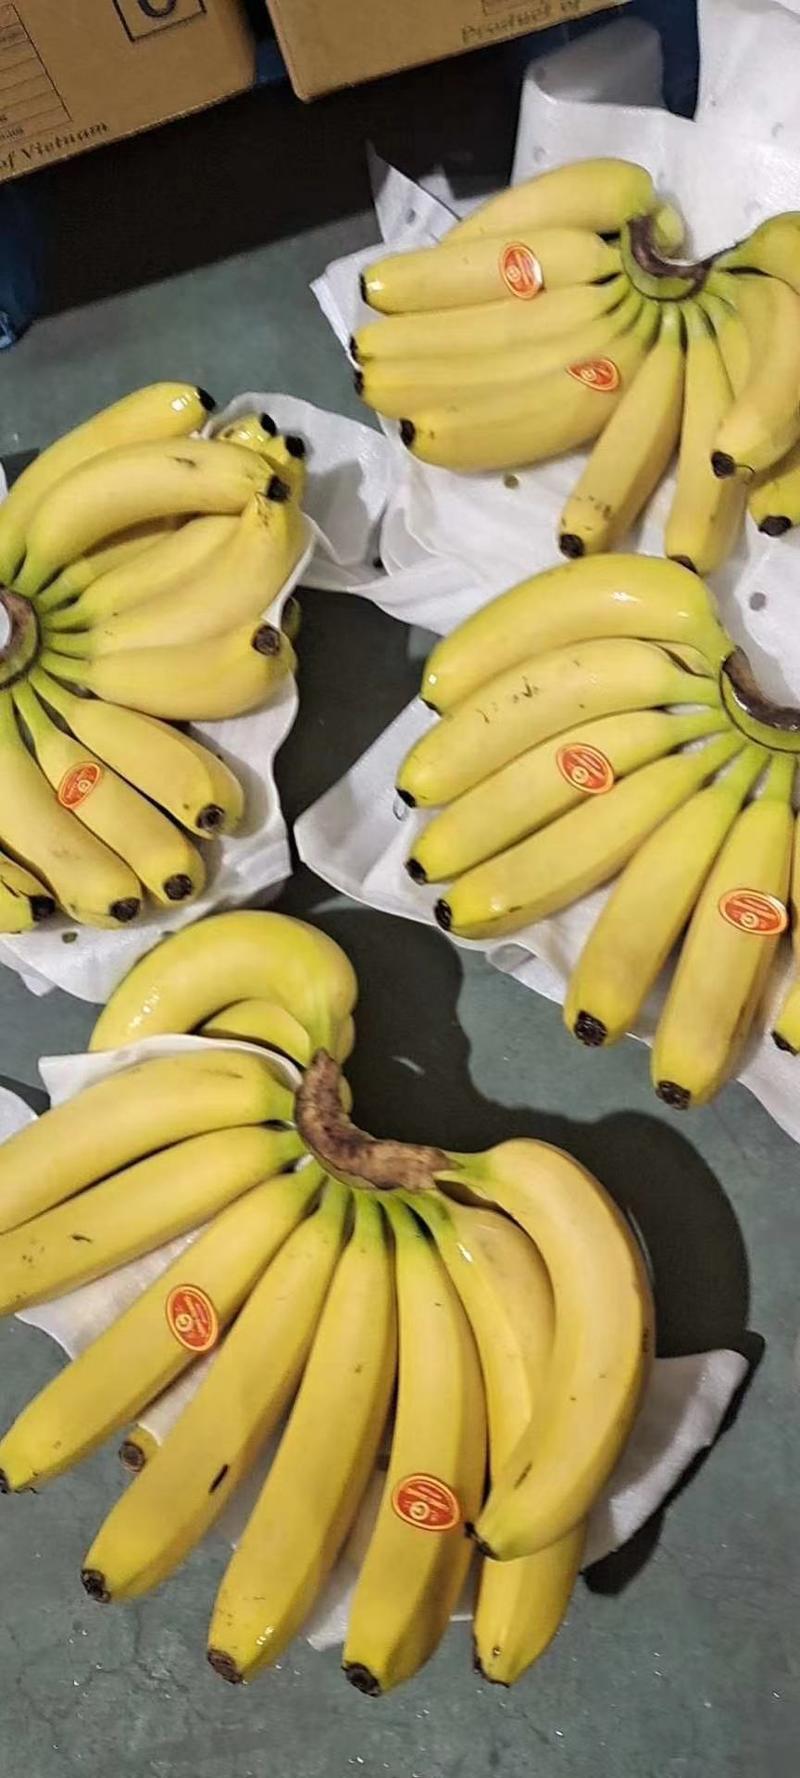 索菲亚佳农都乐进口菲律宾香蕉精品特价超市活动上海香蕉